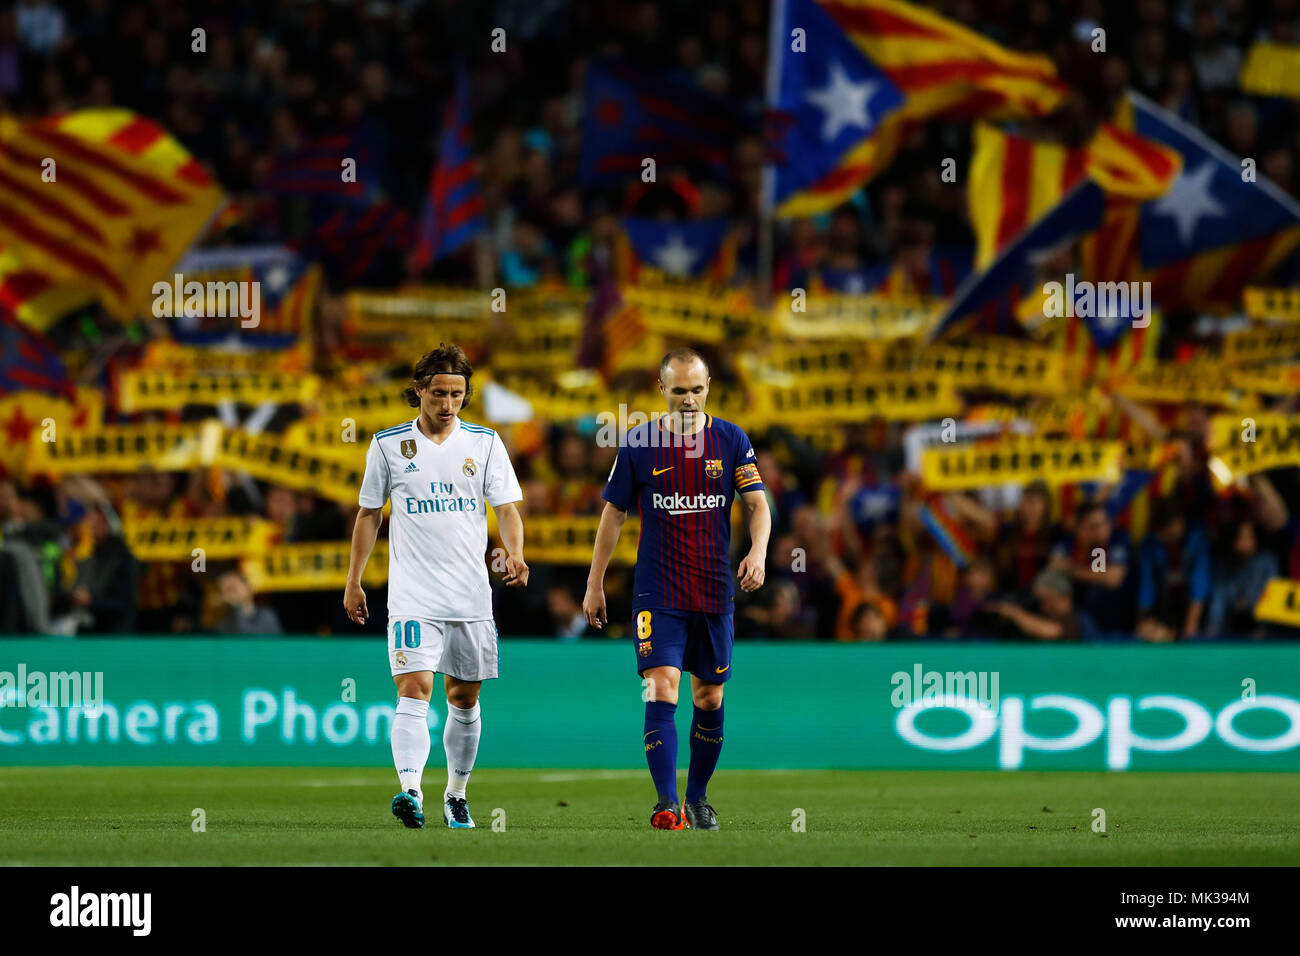 Barcelona, Spain. 6th May, 2018. Luka Modric (Real), Andres Iniesta (Barcelona), May 6, 2018 - Football/Soccer : Primera Division "Liga Santander" match between FC Barcelona 2-2 Real Madrid at Camp Nou